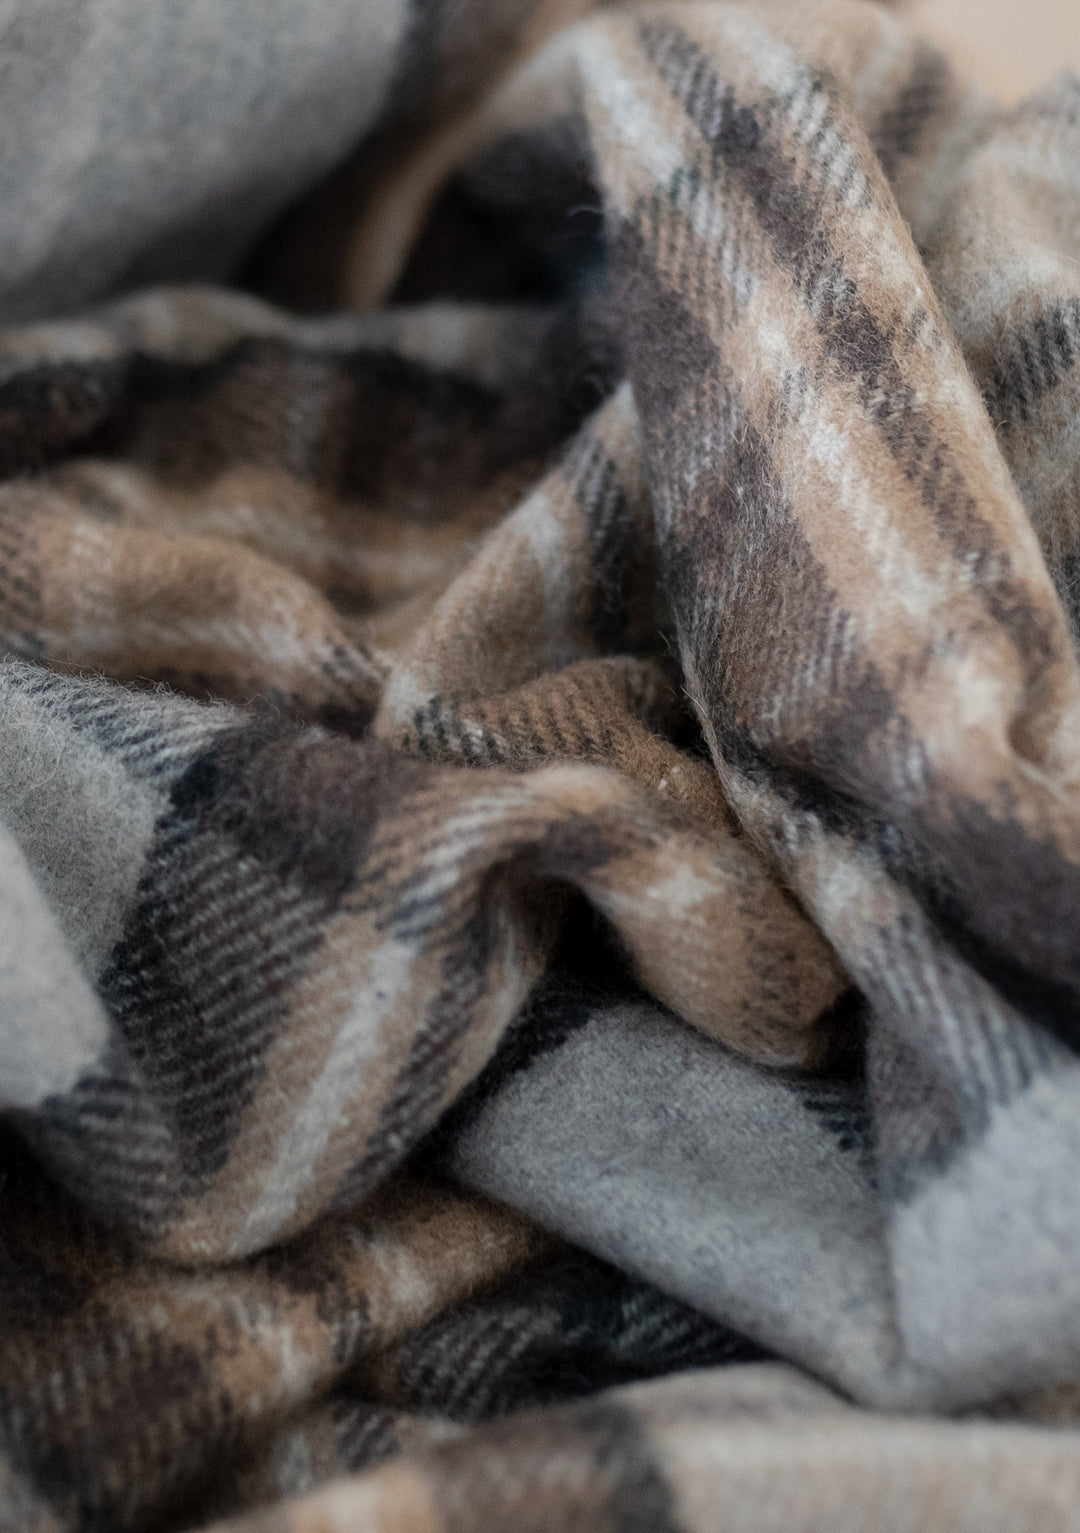 Recycled Wool Blanket in Mackellar Tartan